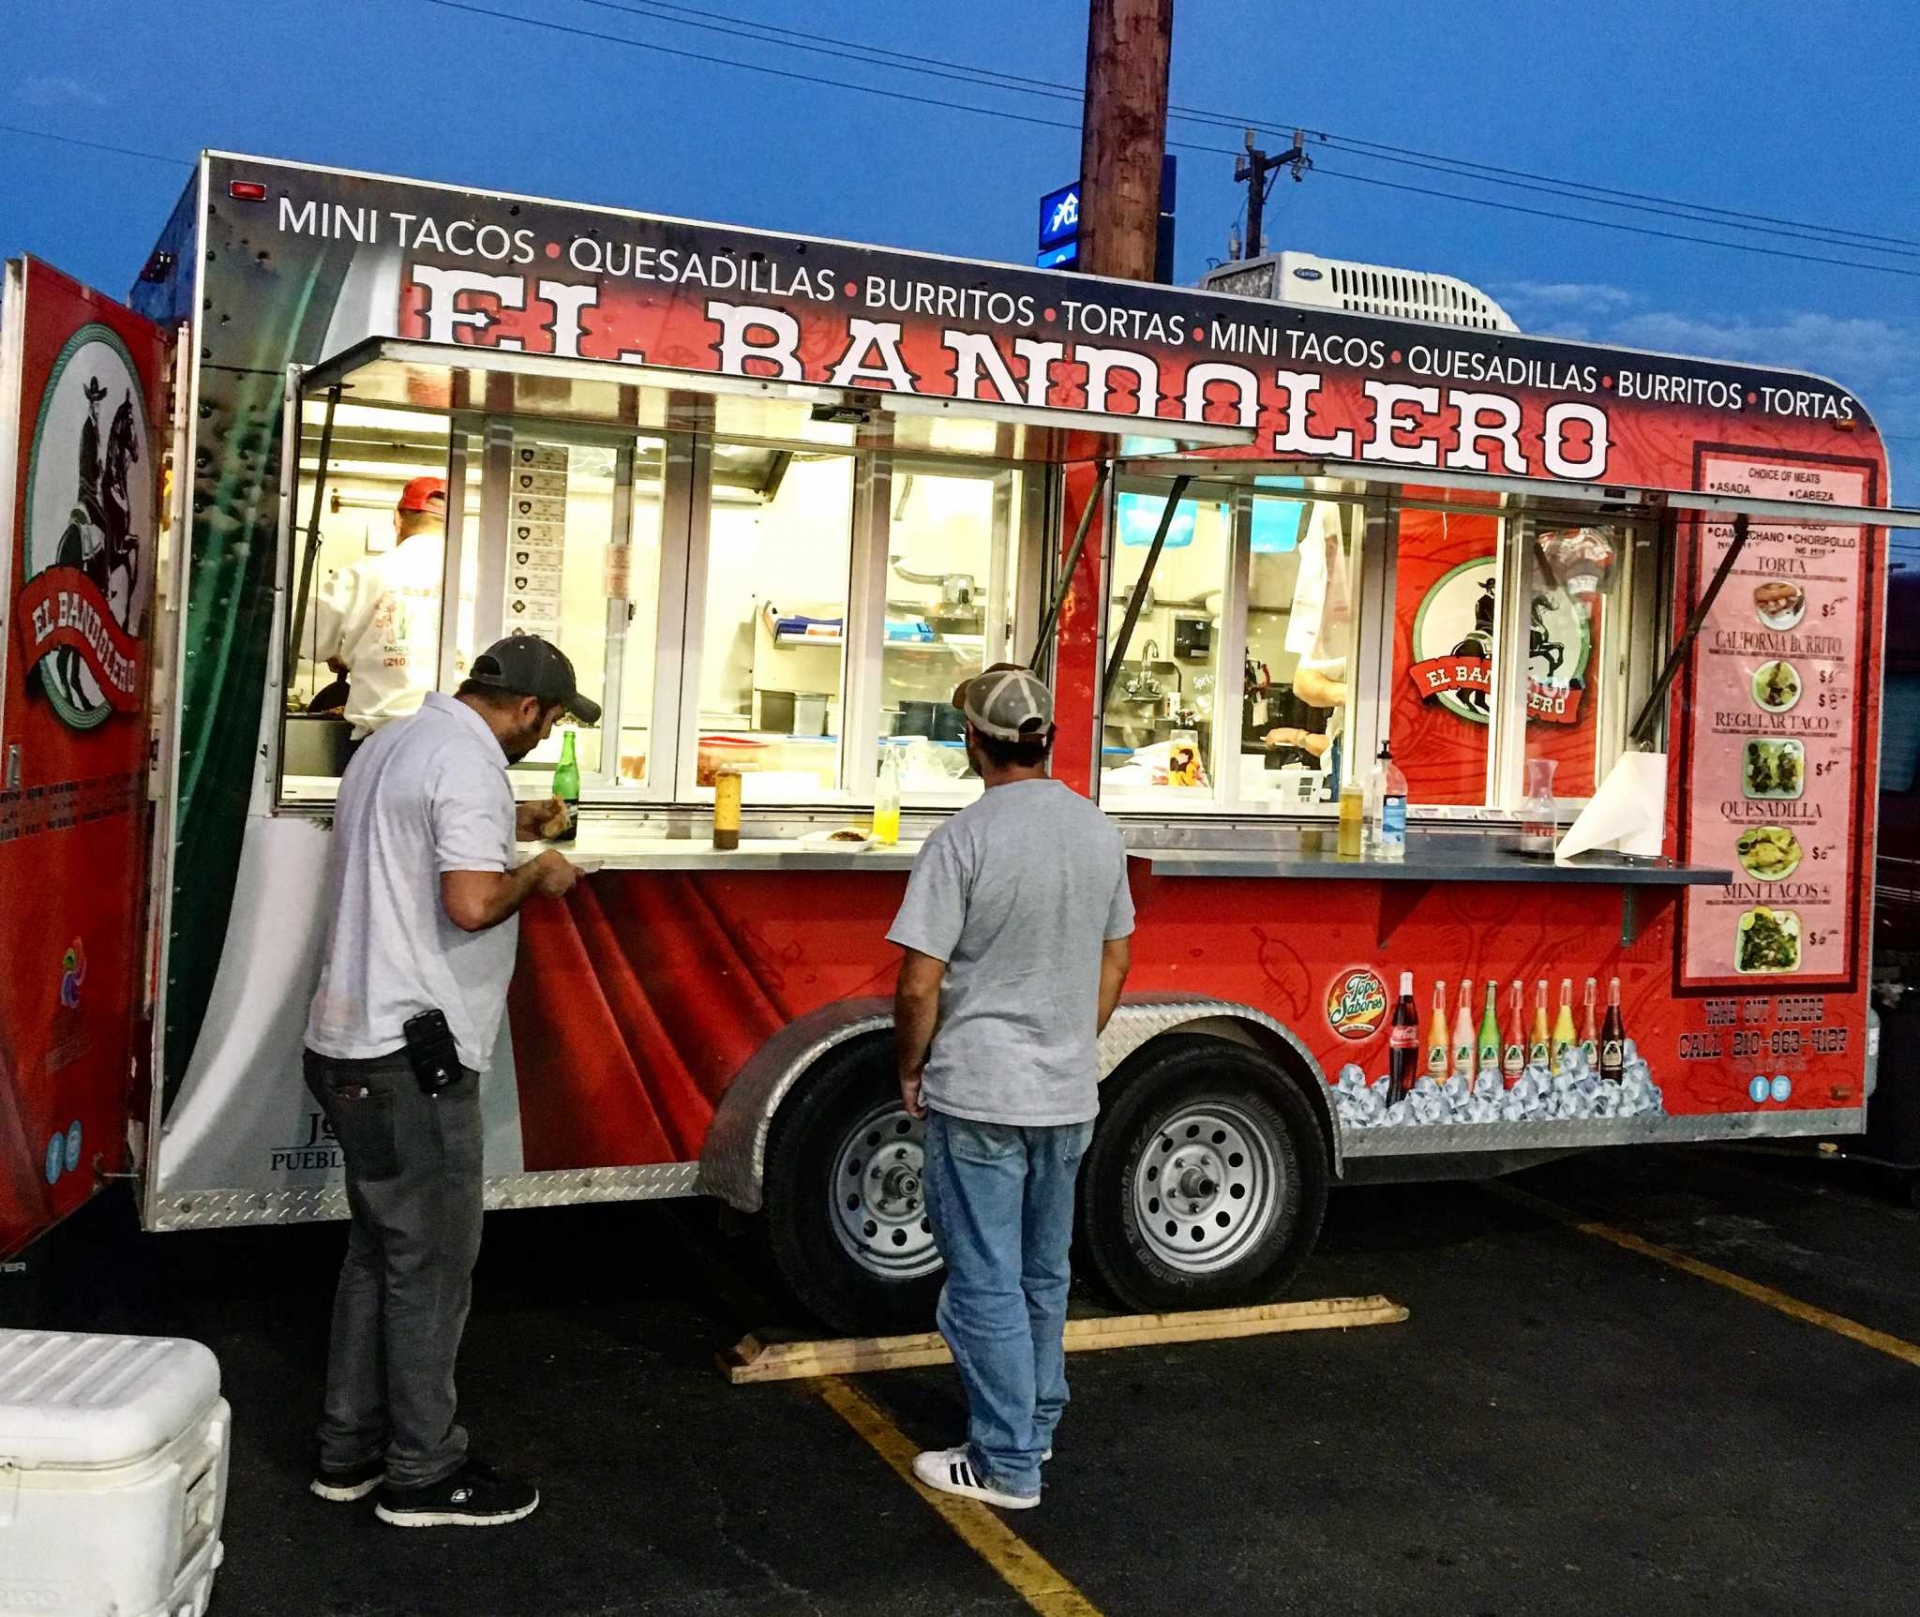 Bạn có thể mua một chiếc bánh Taco nhanh chóng từ chiếc xe tải đi động như này trên đường phố